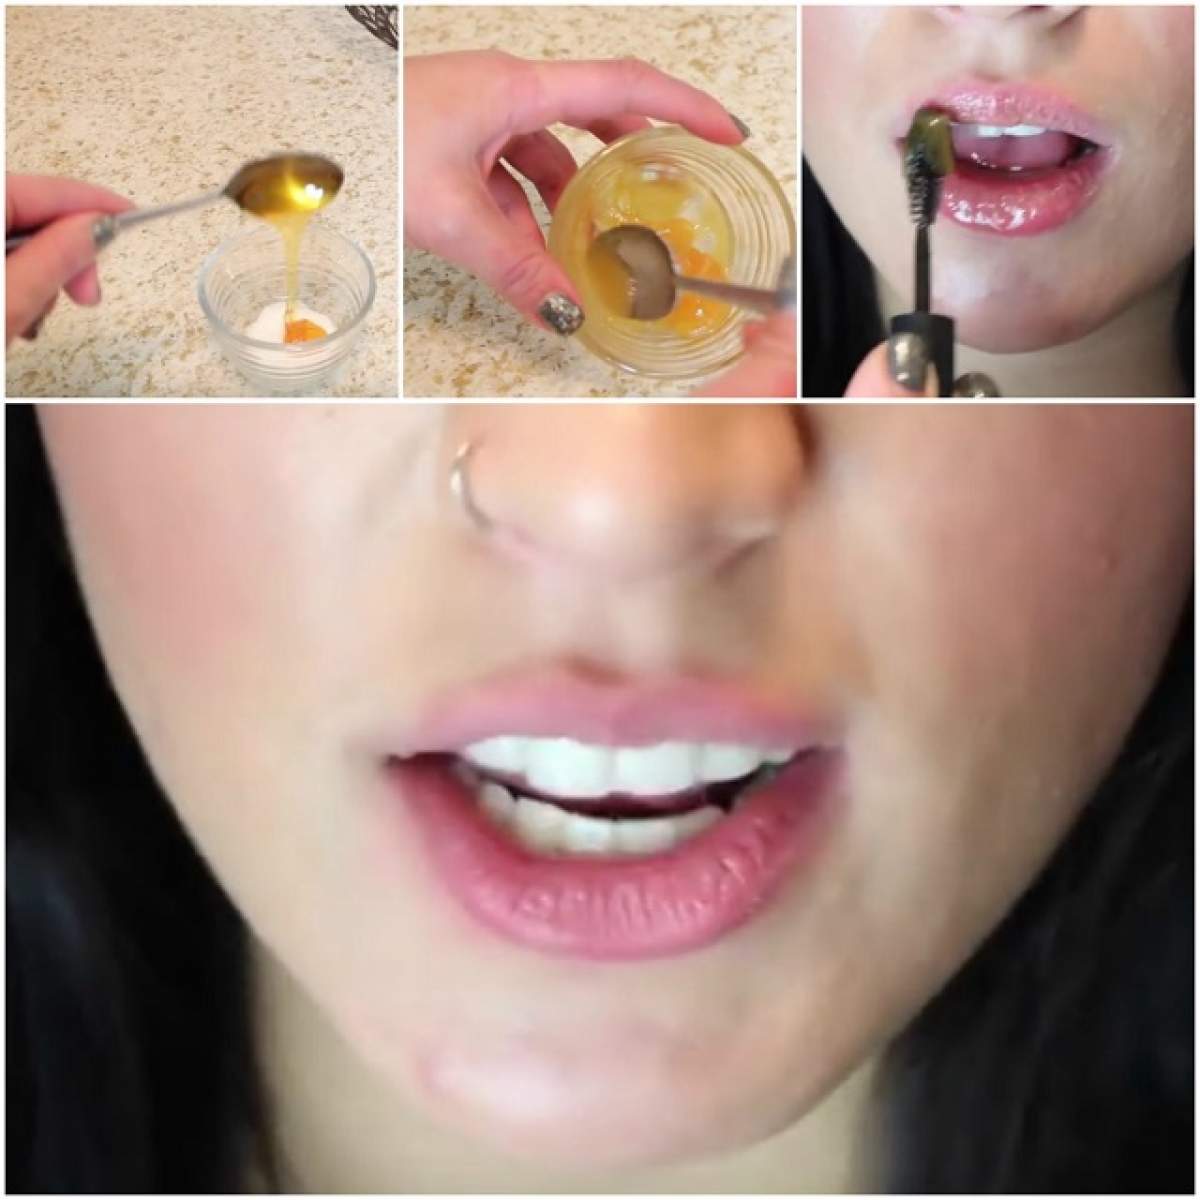 VIDEO / A amestecat trei ingrediente naturale şi a aplicat pasta pe buze, cu ajutorul unei periuţe de mascara. Efectul e fabulos. O să încerci şi tu!